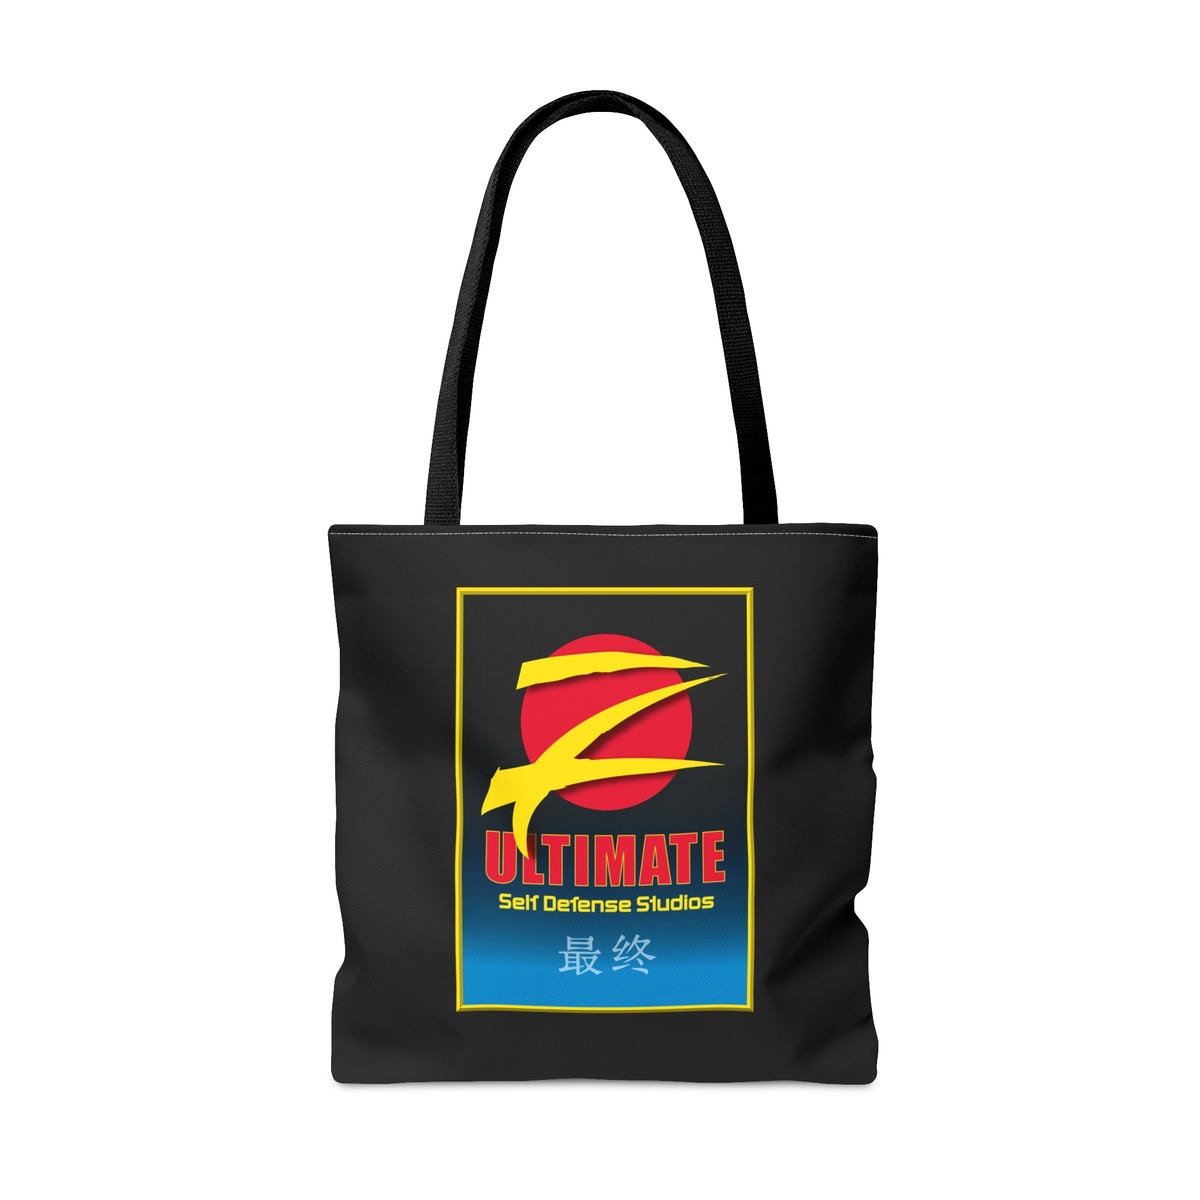 Z-Ultimate Tote Bag - Black